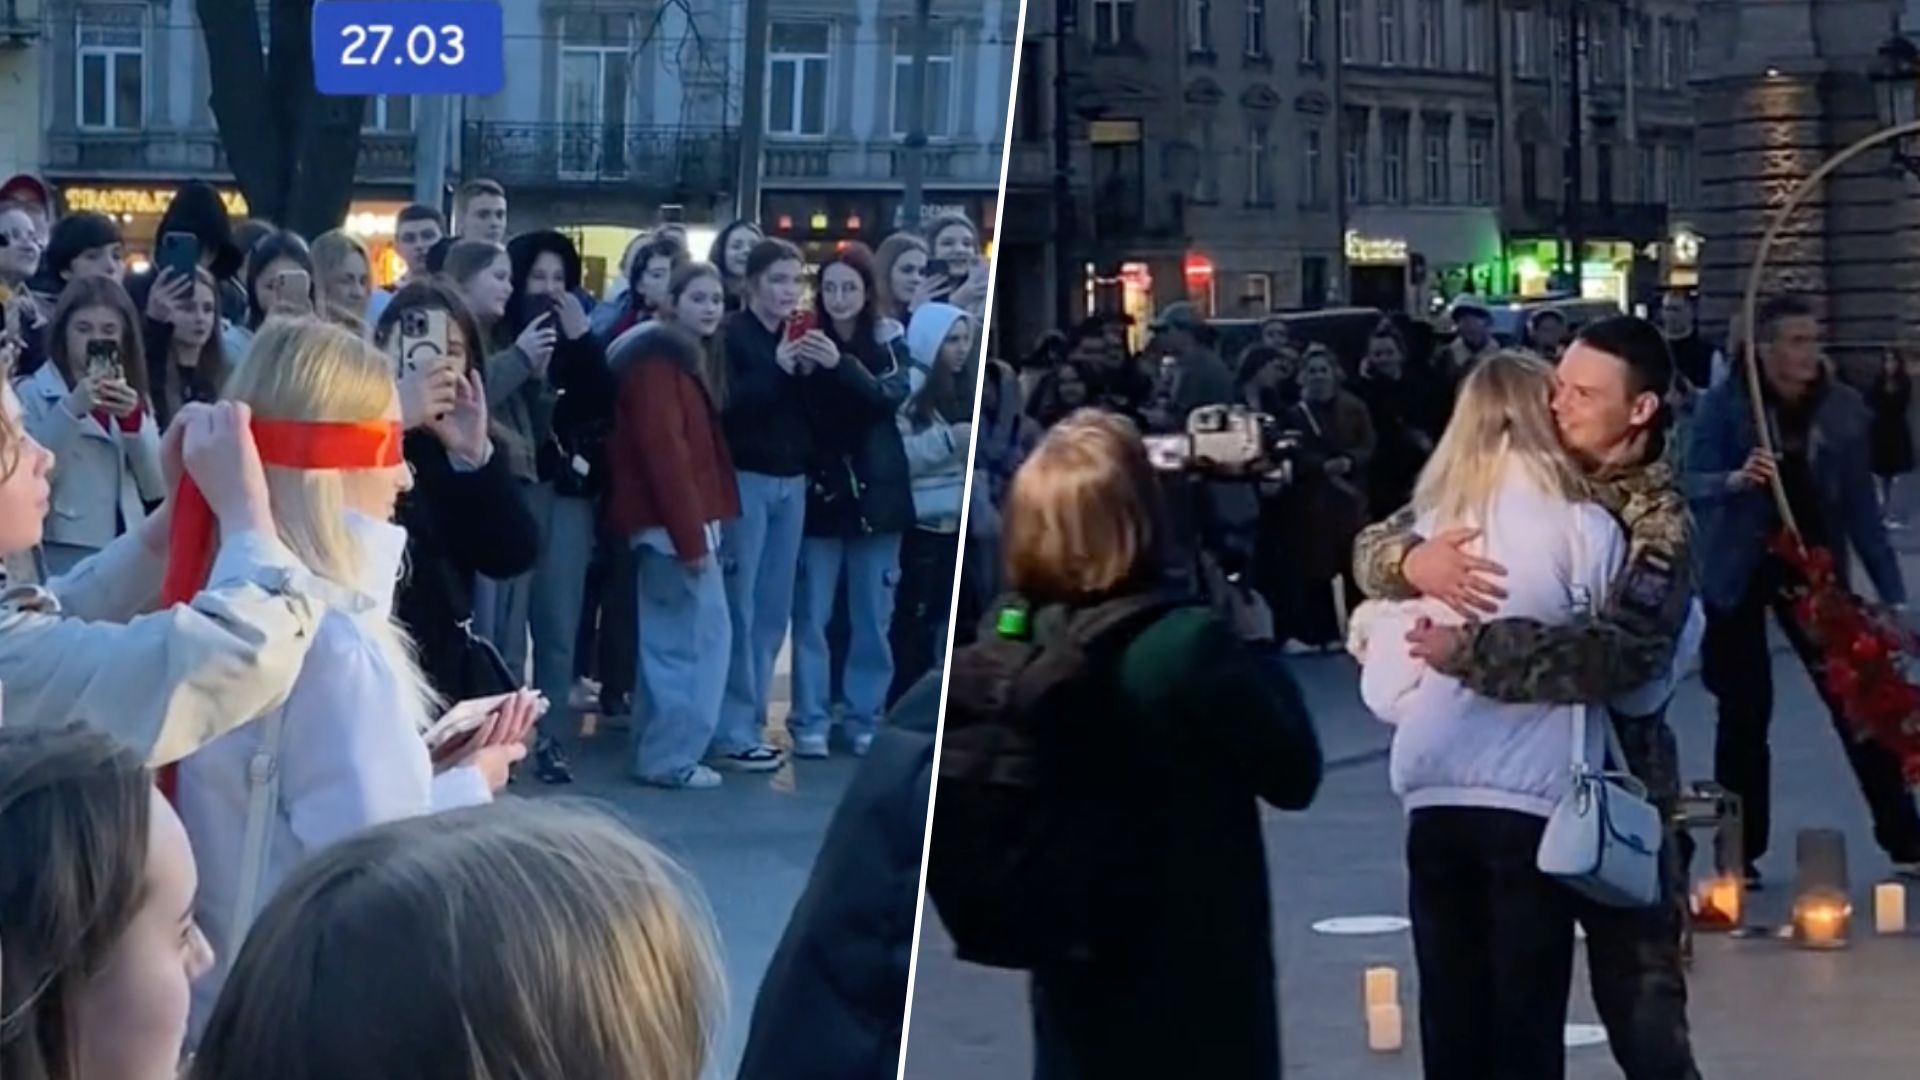 Военный сделал предложение любимой в центре Львова - видео предложения